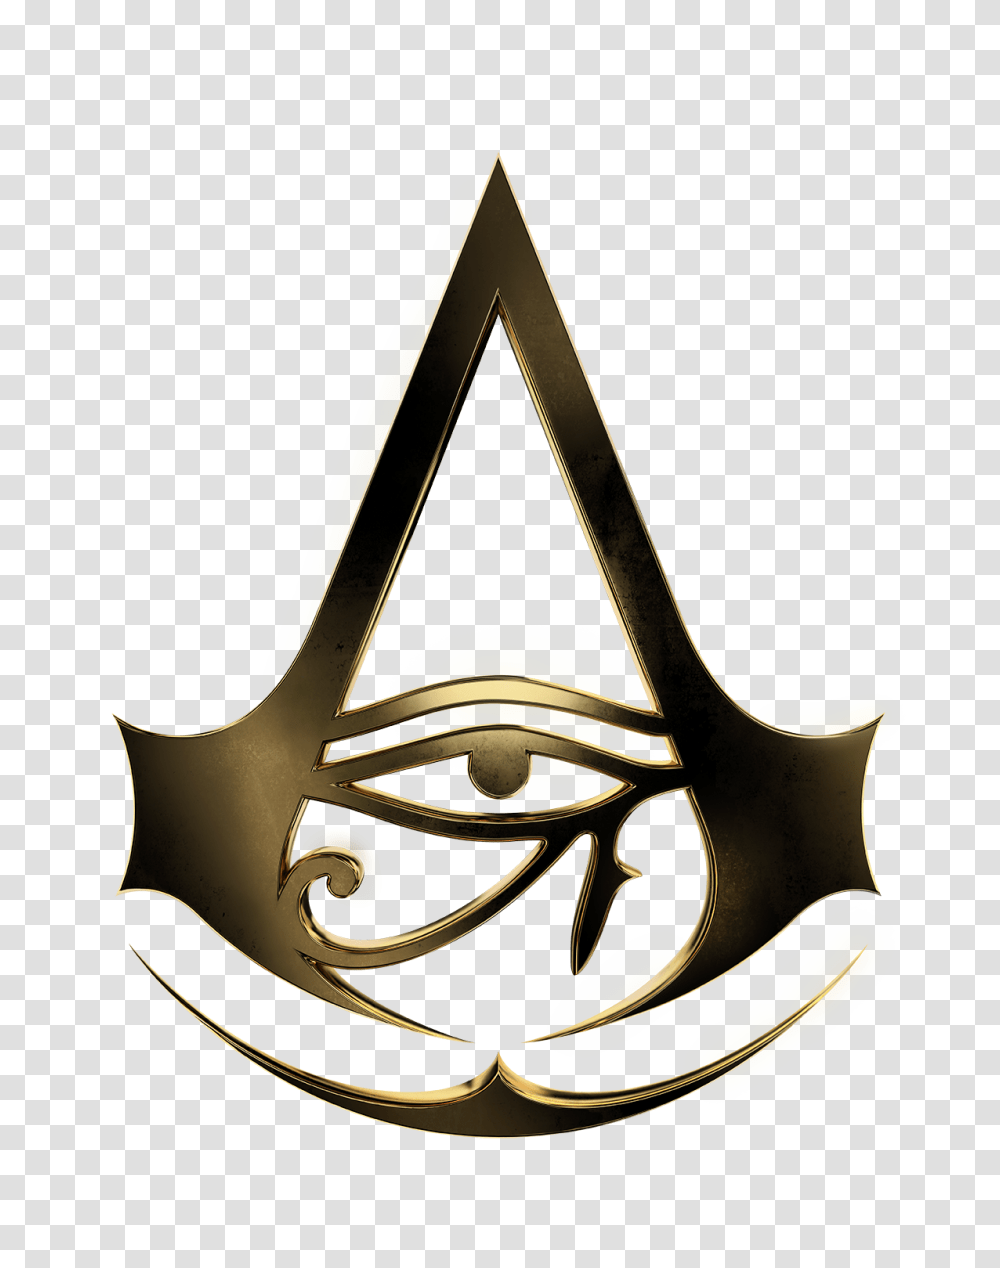 Make Assassins Creed Logo Grendizer, Triangle, Sweets, Food, Modern Art Transparent Png